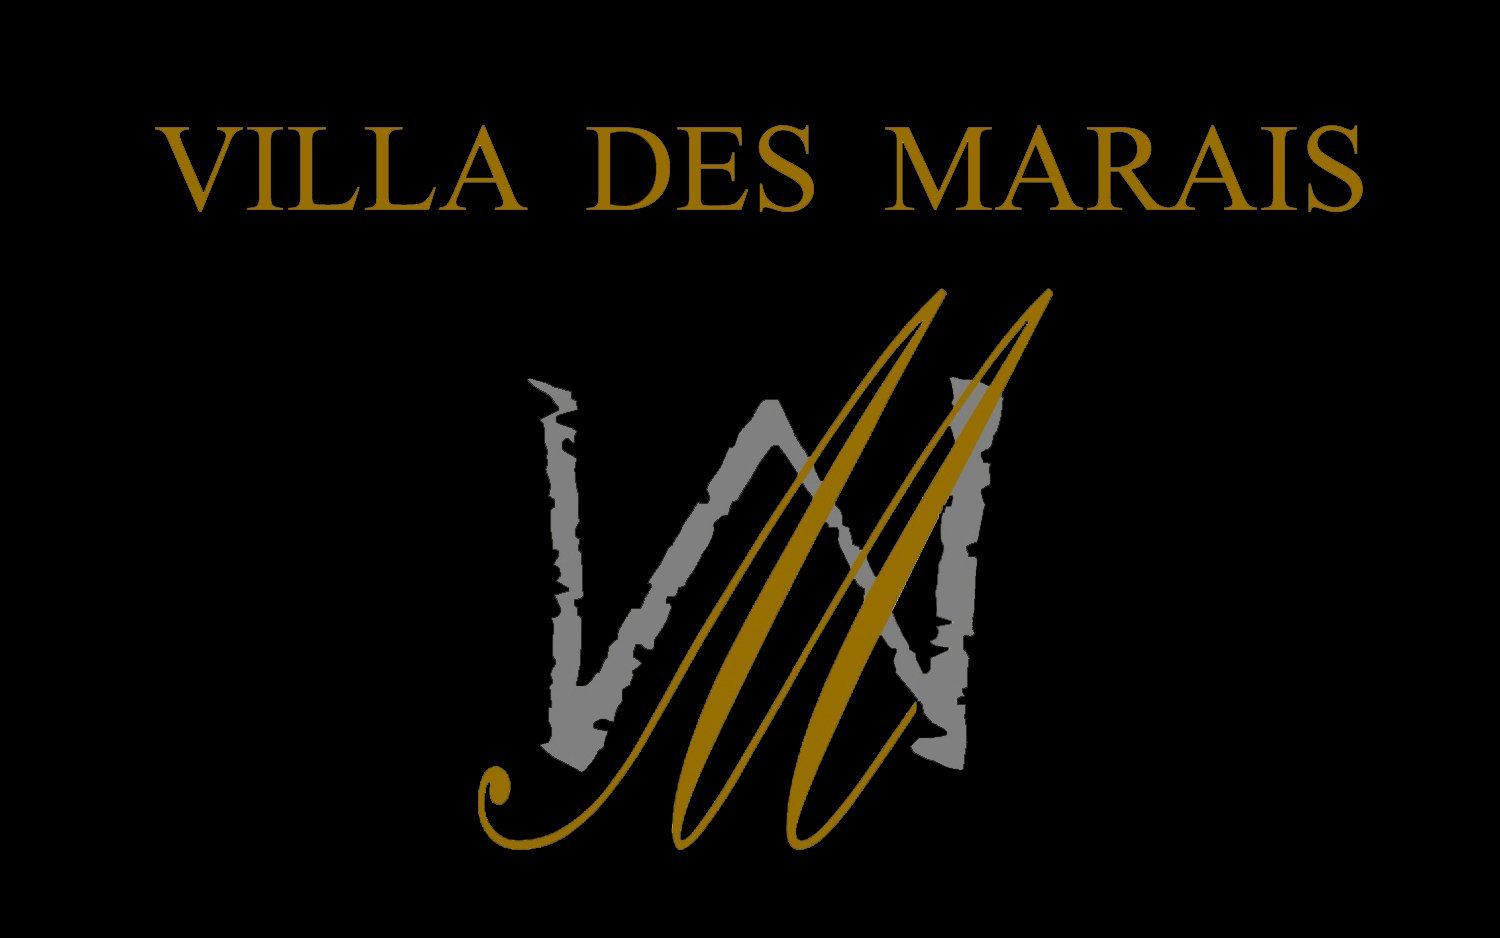 www.villa-des-marais.com